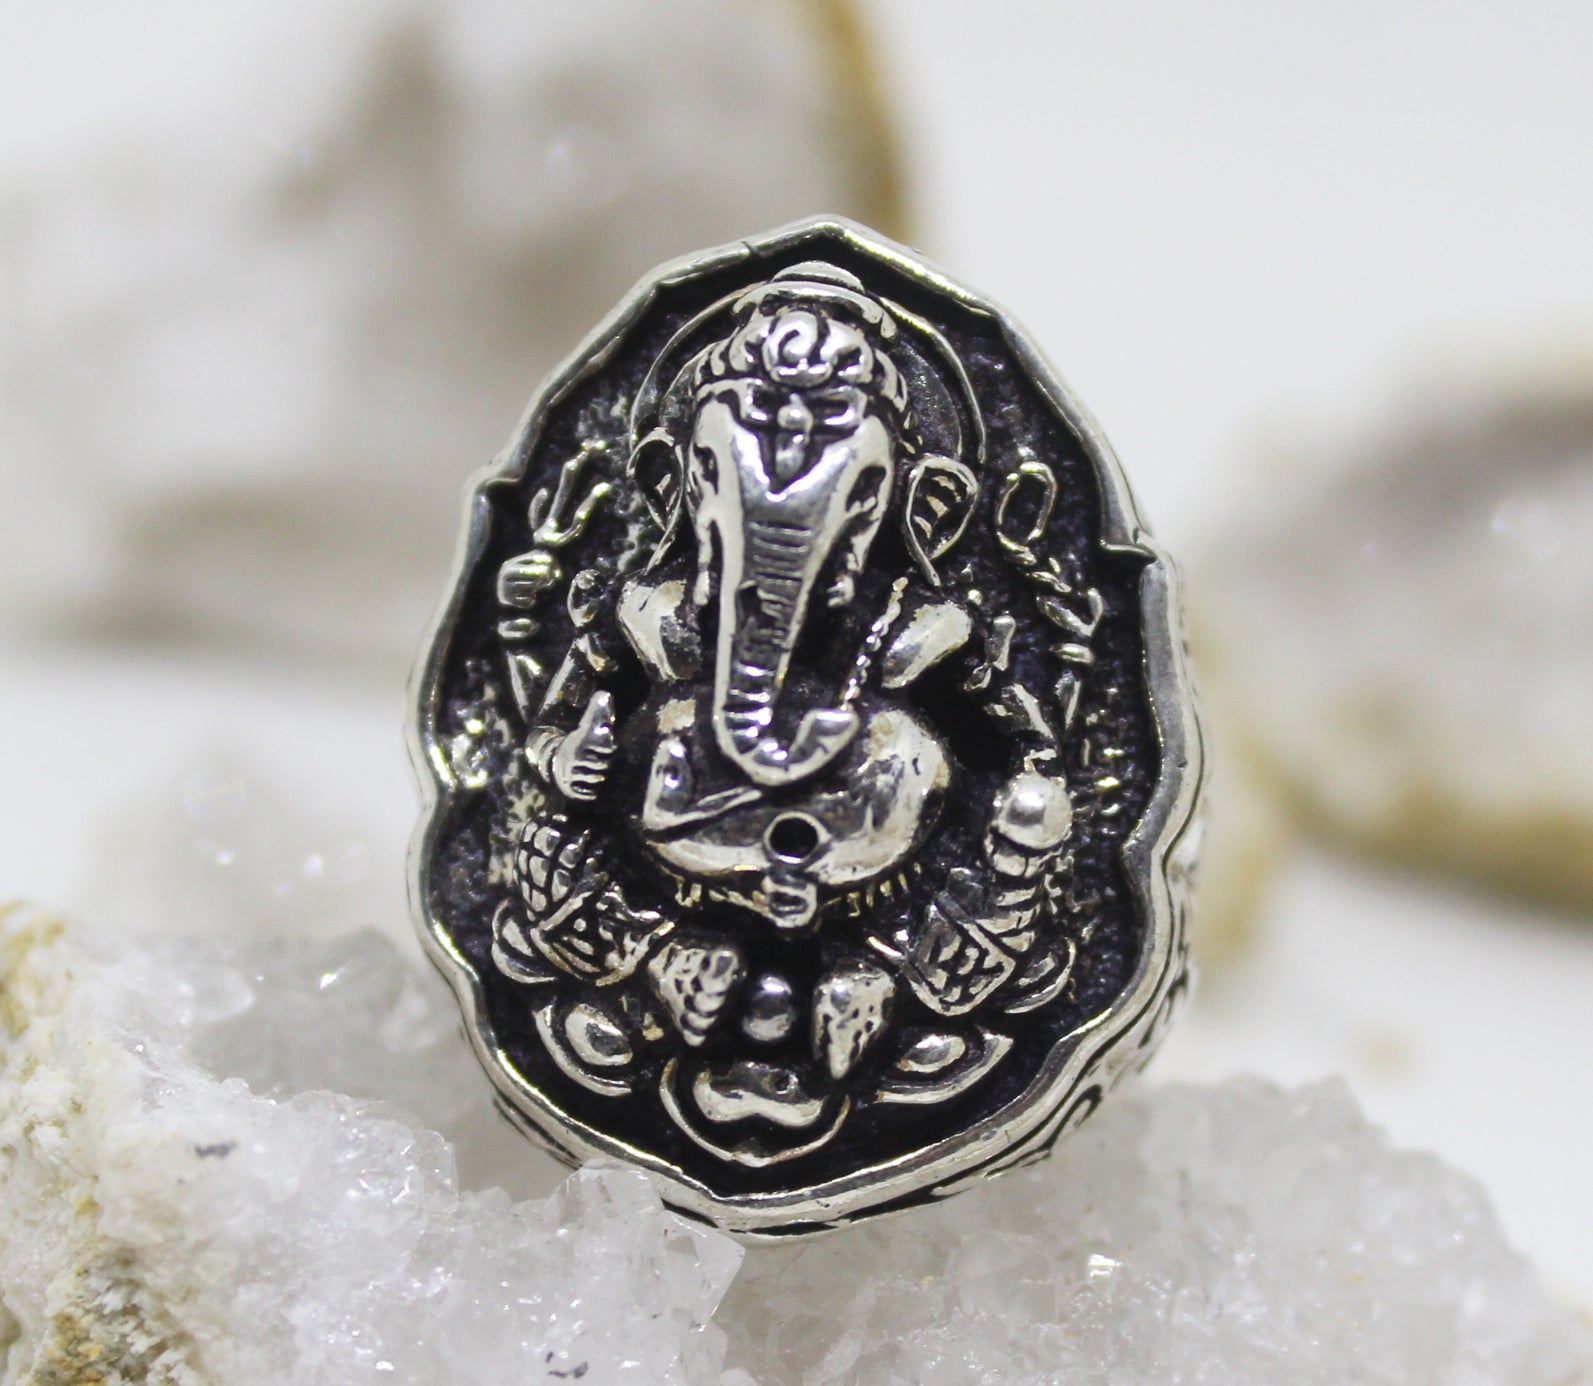 Buy Silver Ganesh Ring Yoga Ring Buddha Ring Hindu God Ring Elephant God  Ring Spiritual Ring Buddhist Ring Yogic Ring Animal Ring Indian Ring.  Online in India - Etsy